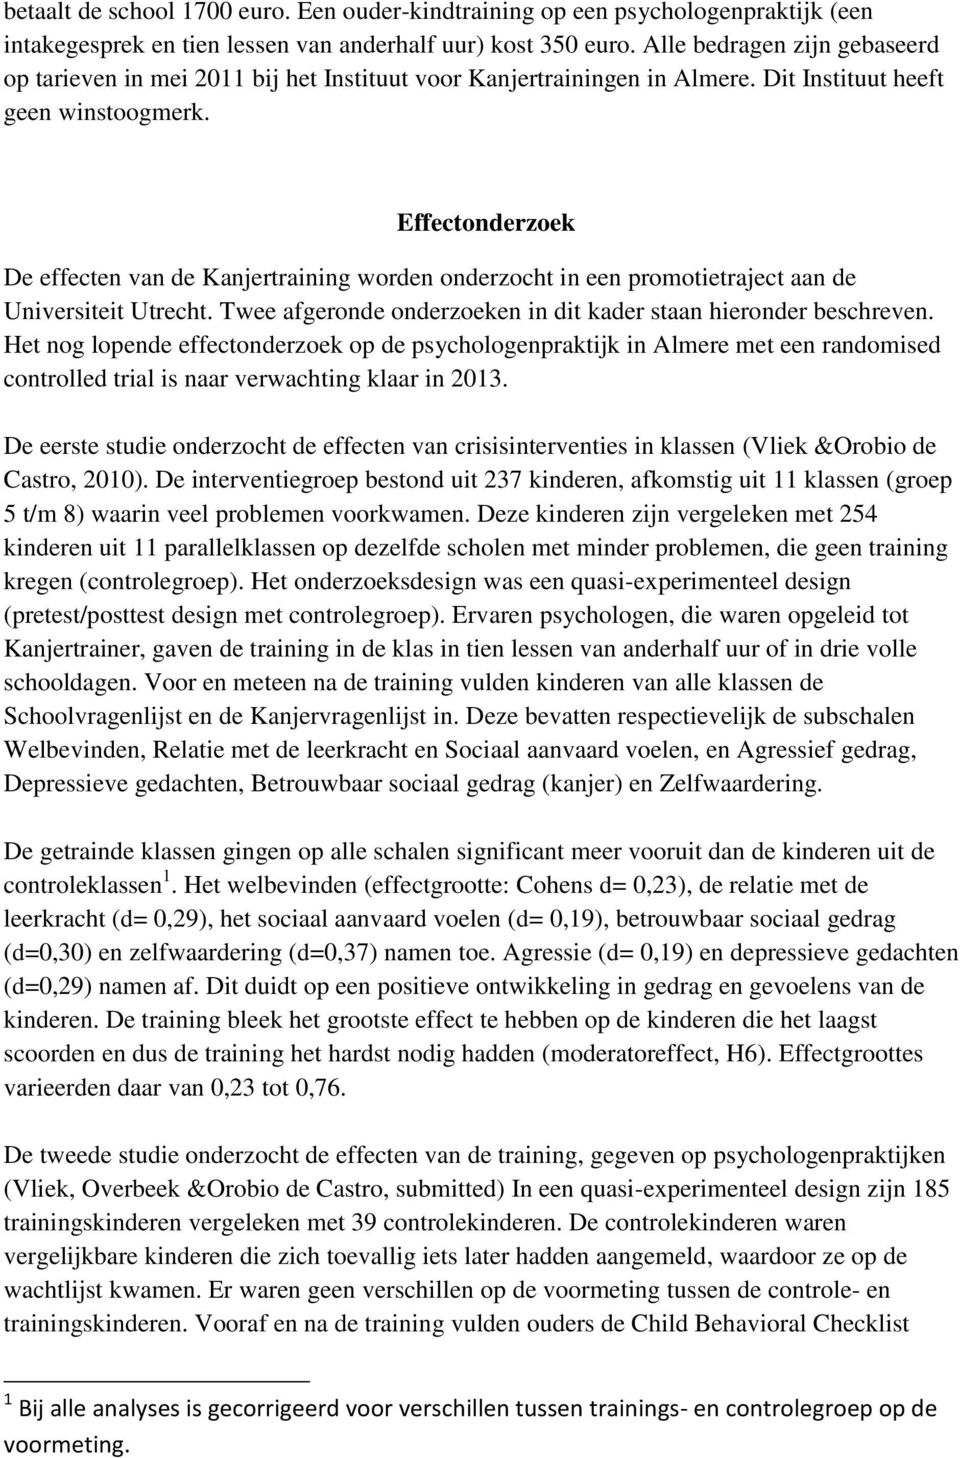 Effectonderzoek De effecten van de Kanjertraining worden onderzocht in een promotietraject aan de Universiteit Utrecht. Twee afgeronde onderzoeken in dit kader staan hieronder beschreven.